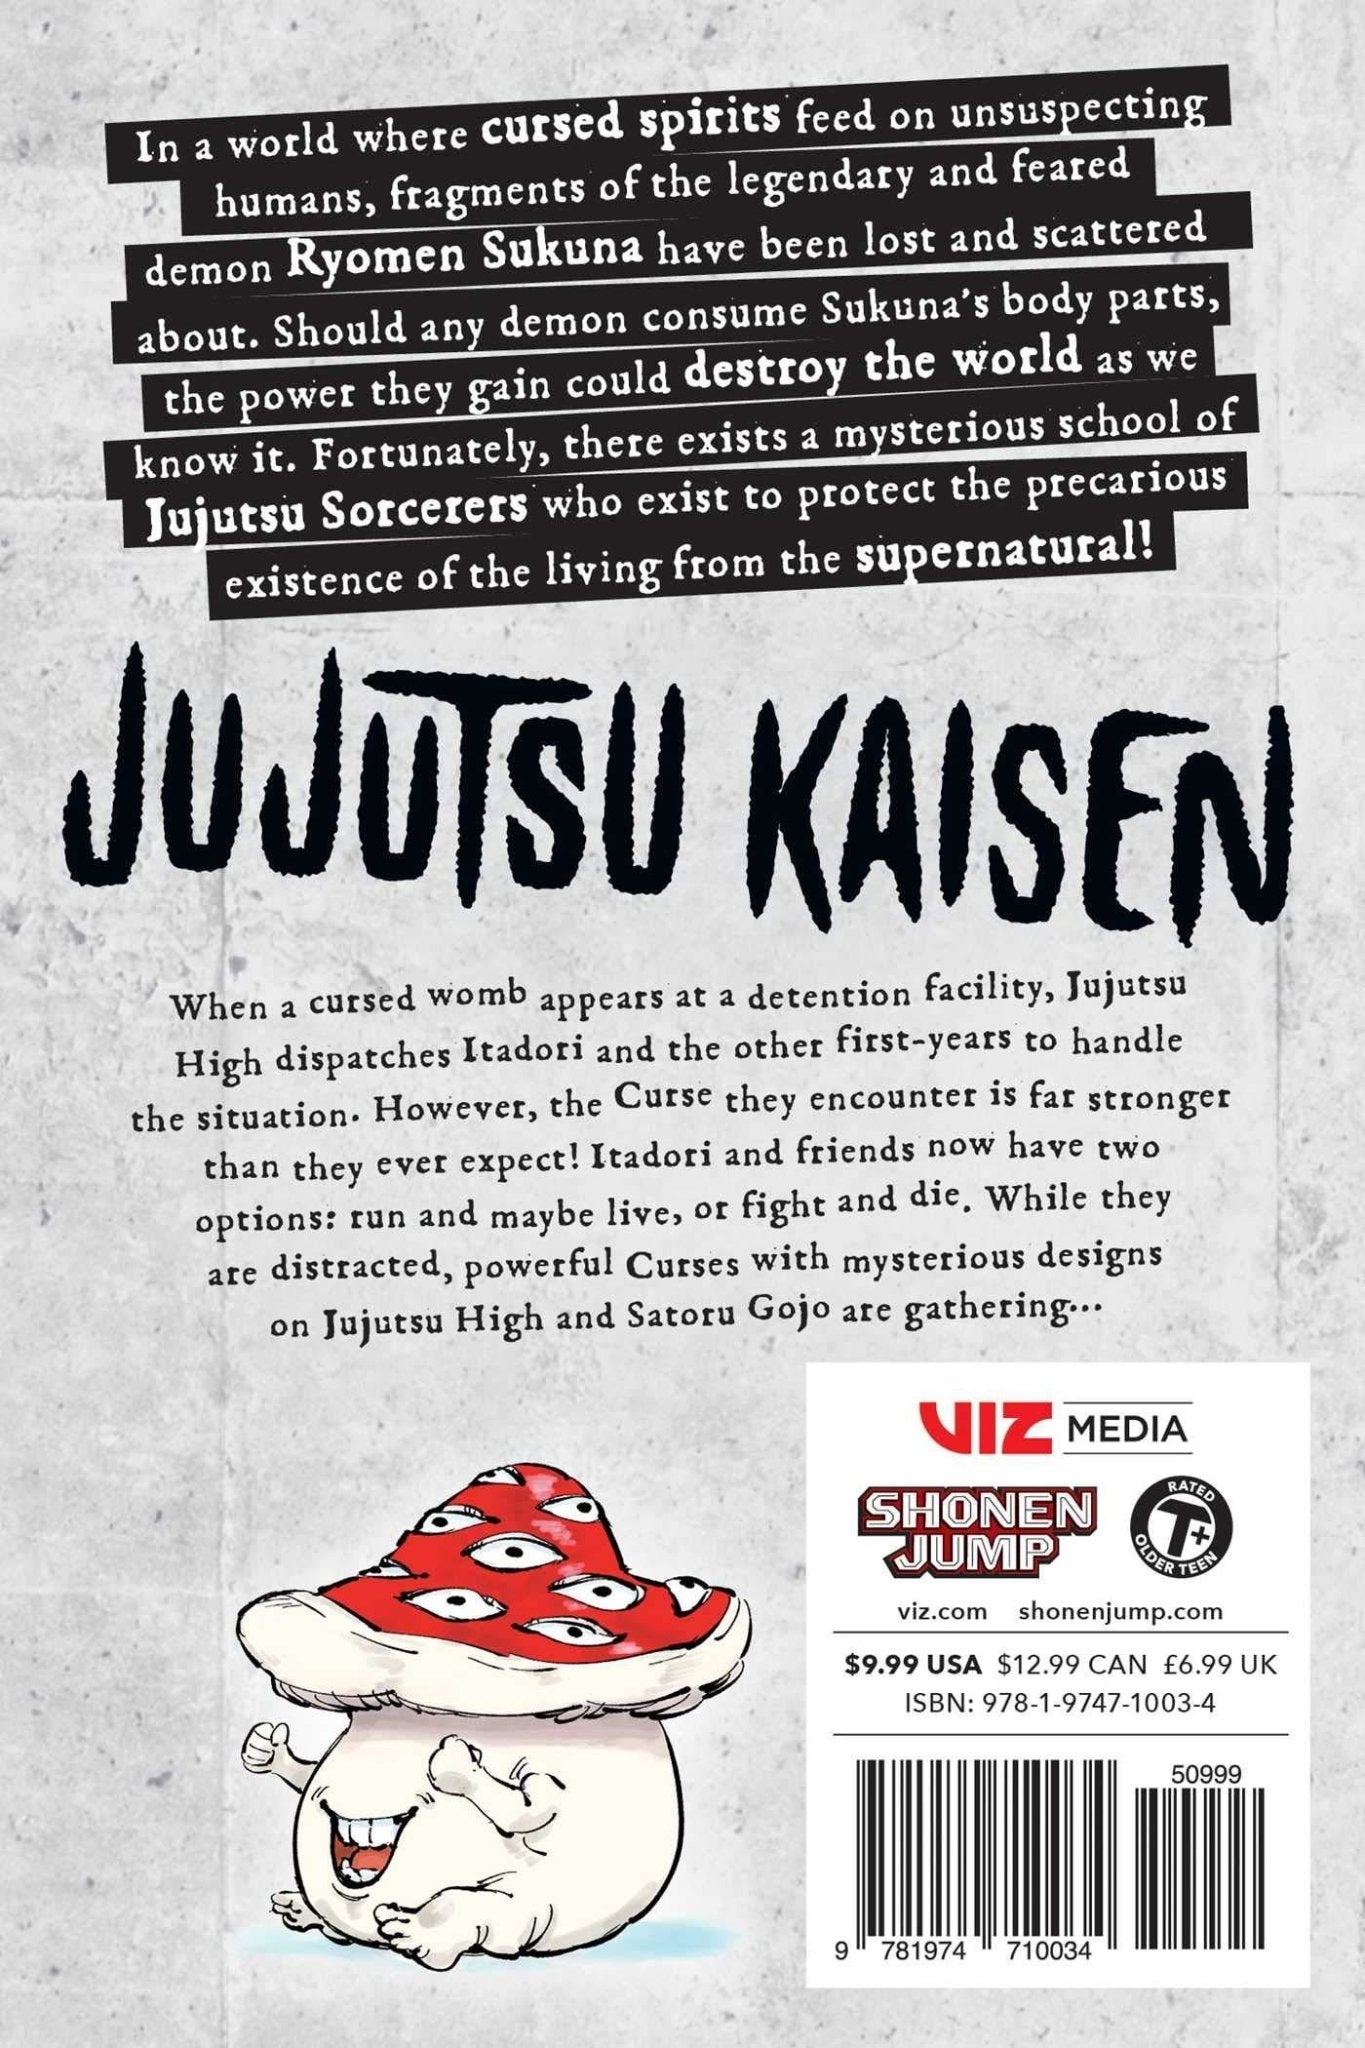 Jujutsu Kaisen, Vol. 2 ( Jujutsu Kaisen #2 ) by Gege Akutami [Paperback] - LV'S Global Media